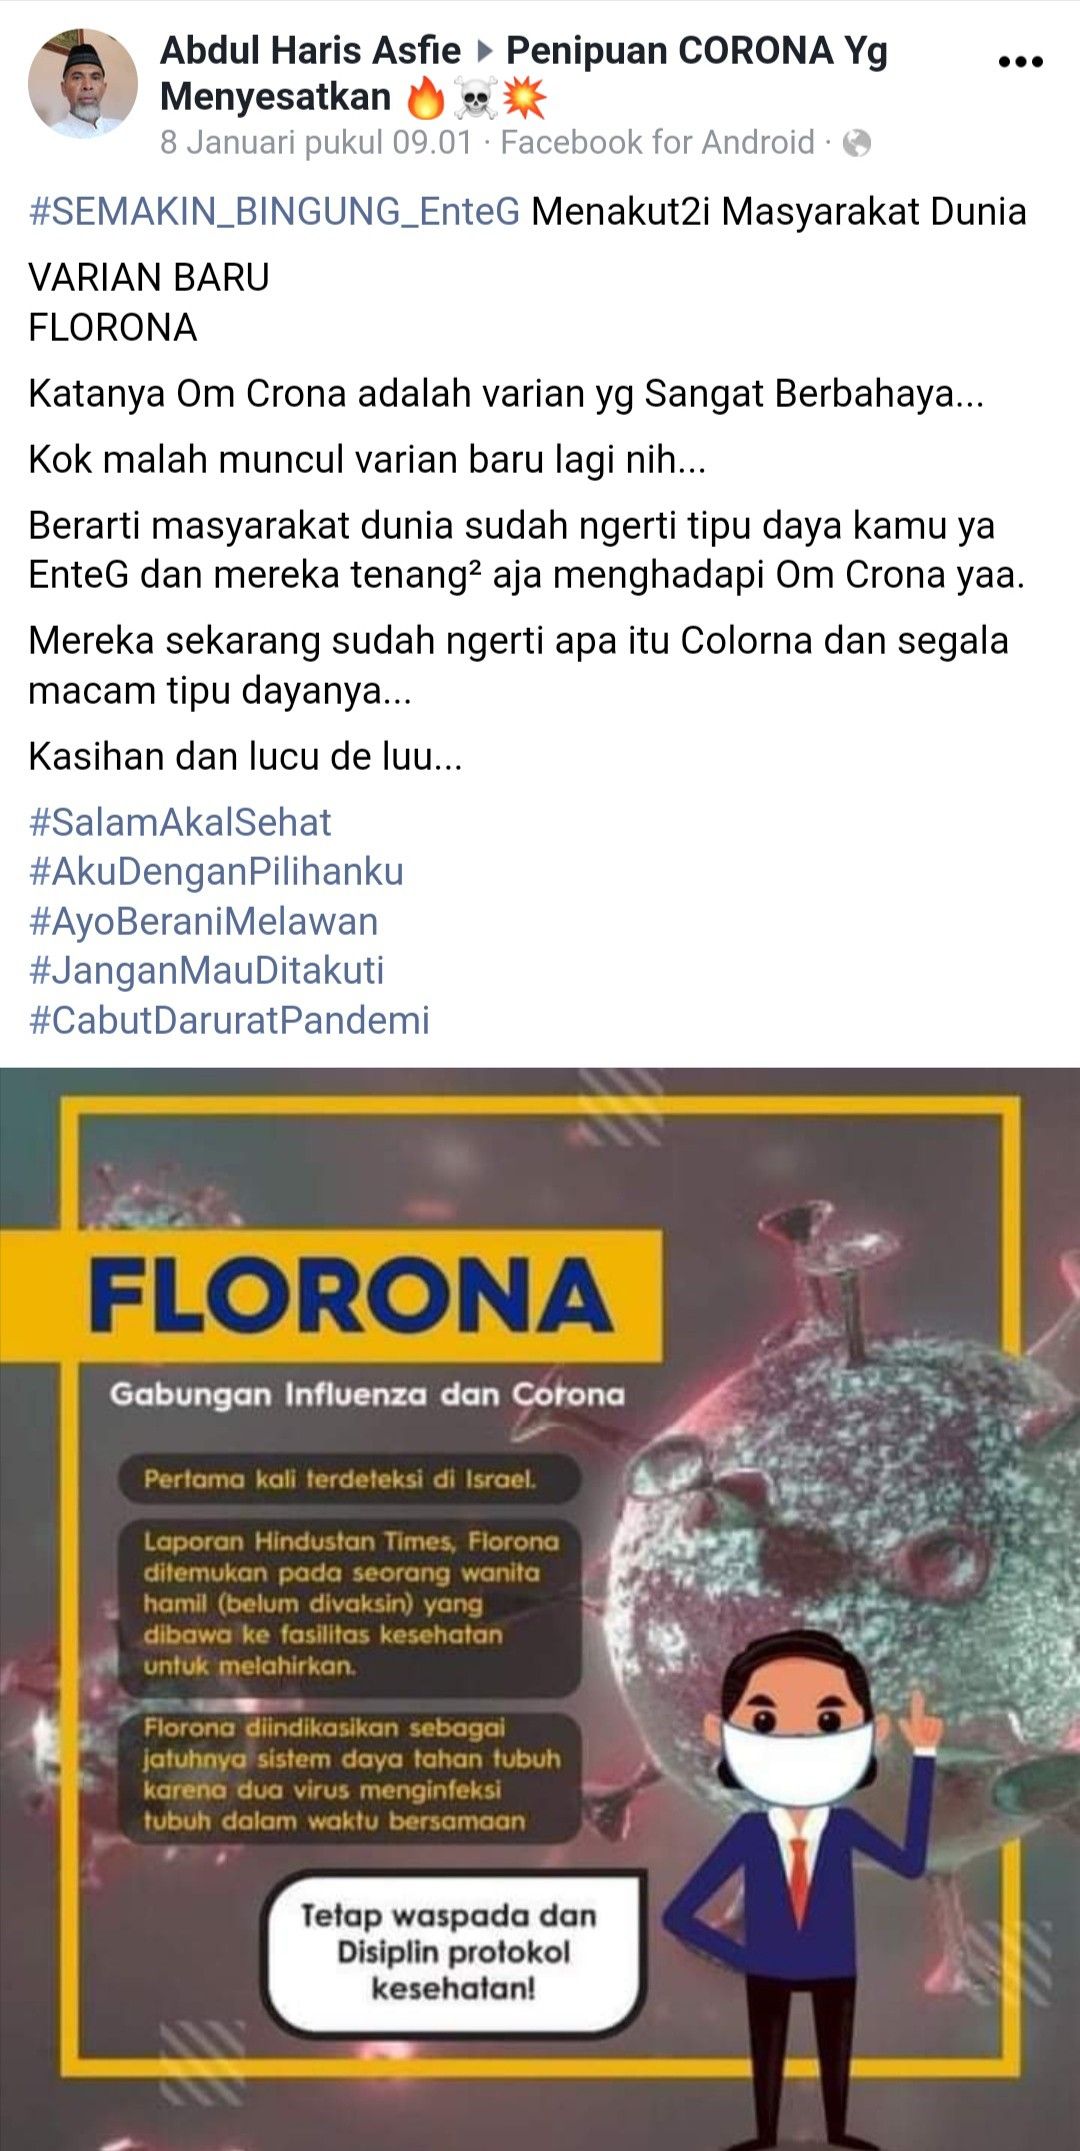 Florona virus varian baru dari corona